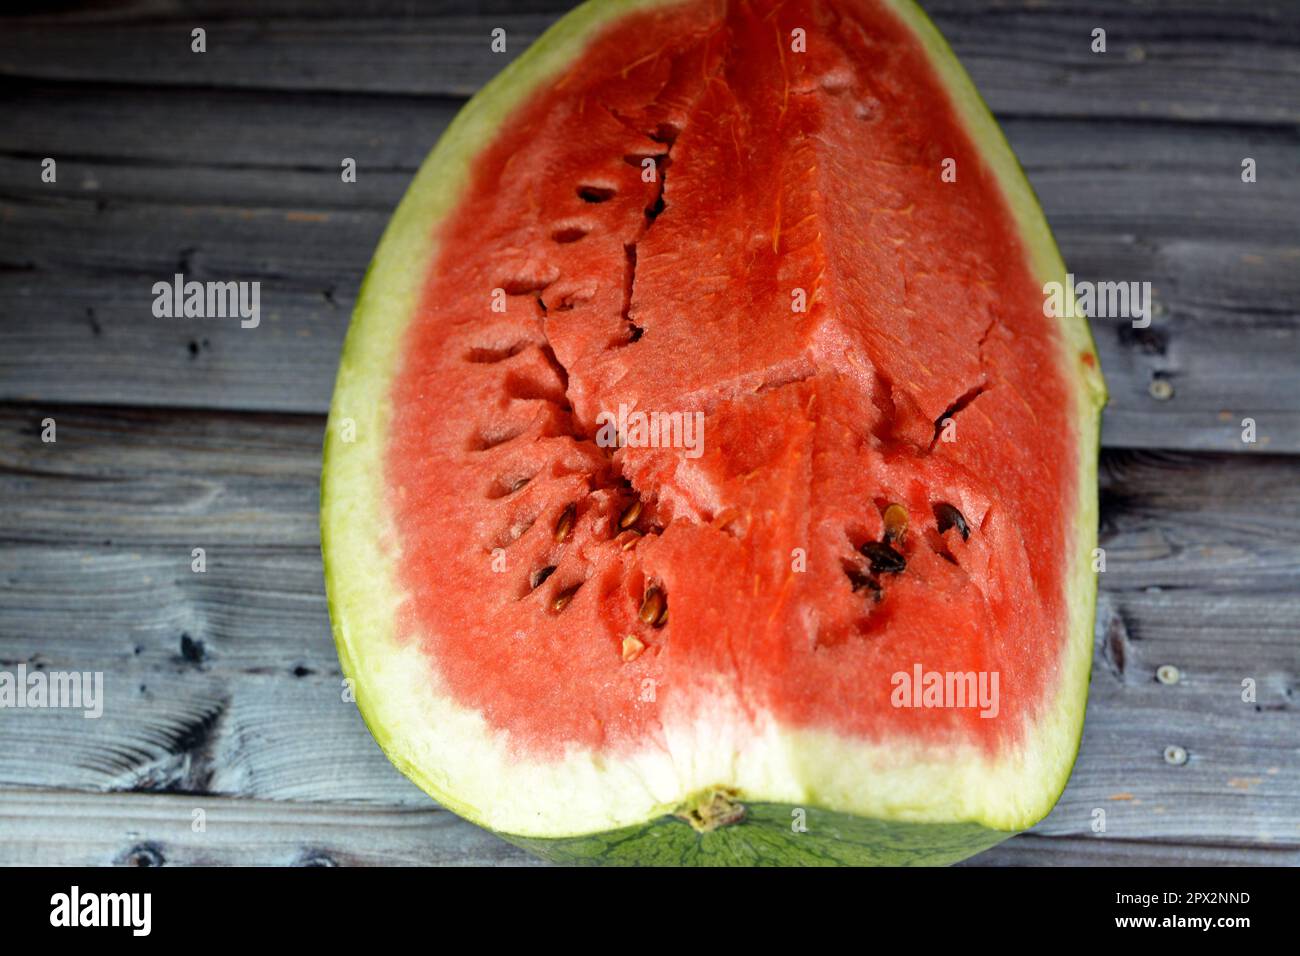 Ein Viertel Wassermelonenfrucht, geschnittenes Stück mit Samen und grüner Schale, serviert als gesunder frischer Snack, selektiver Fokus einer frischen, reifen Wassermelone iso Stockfoto